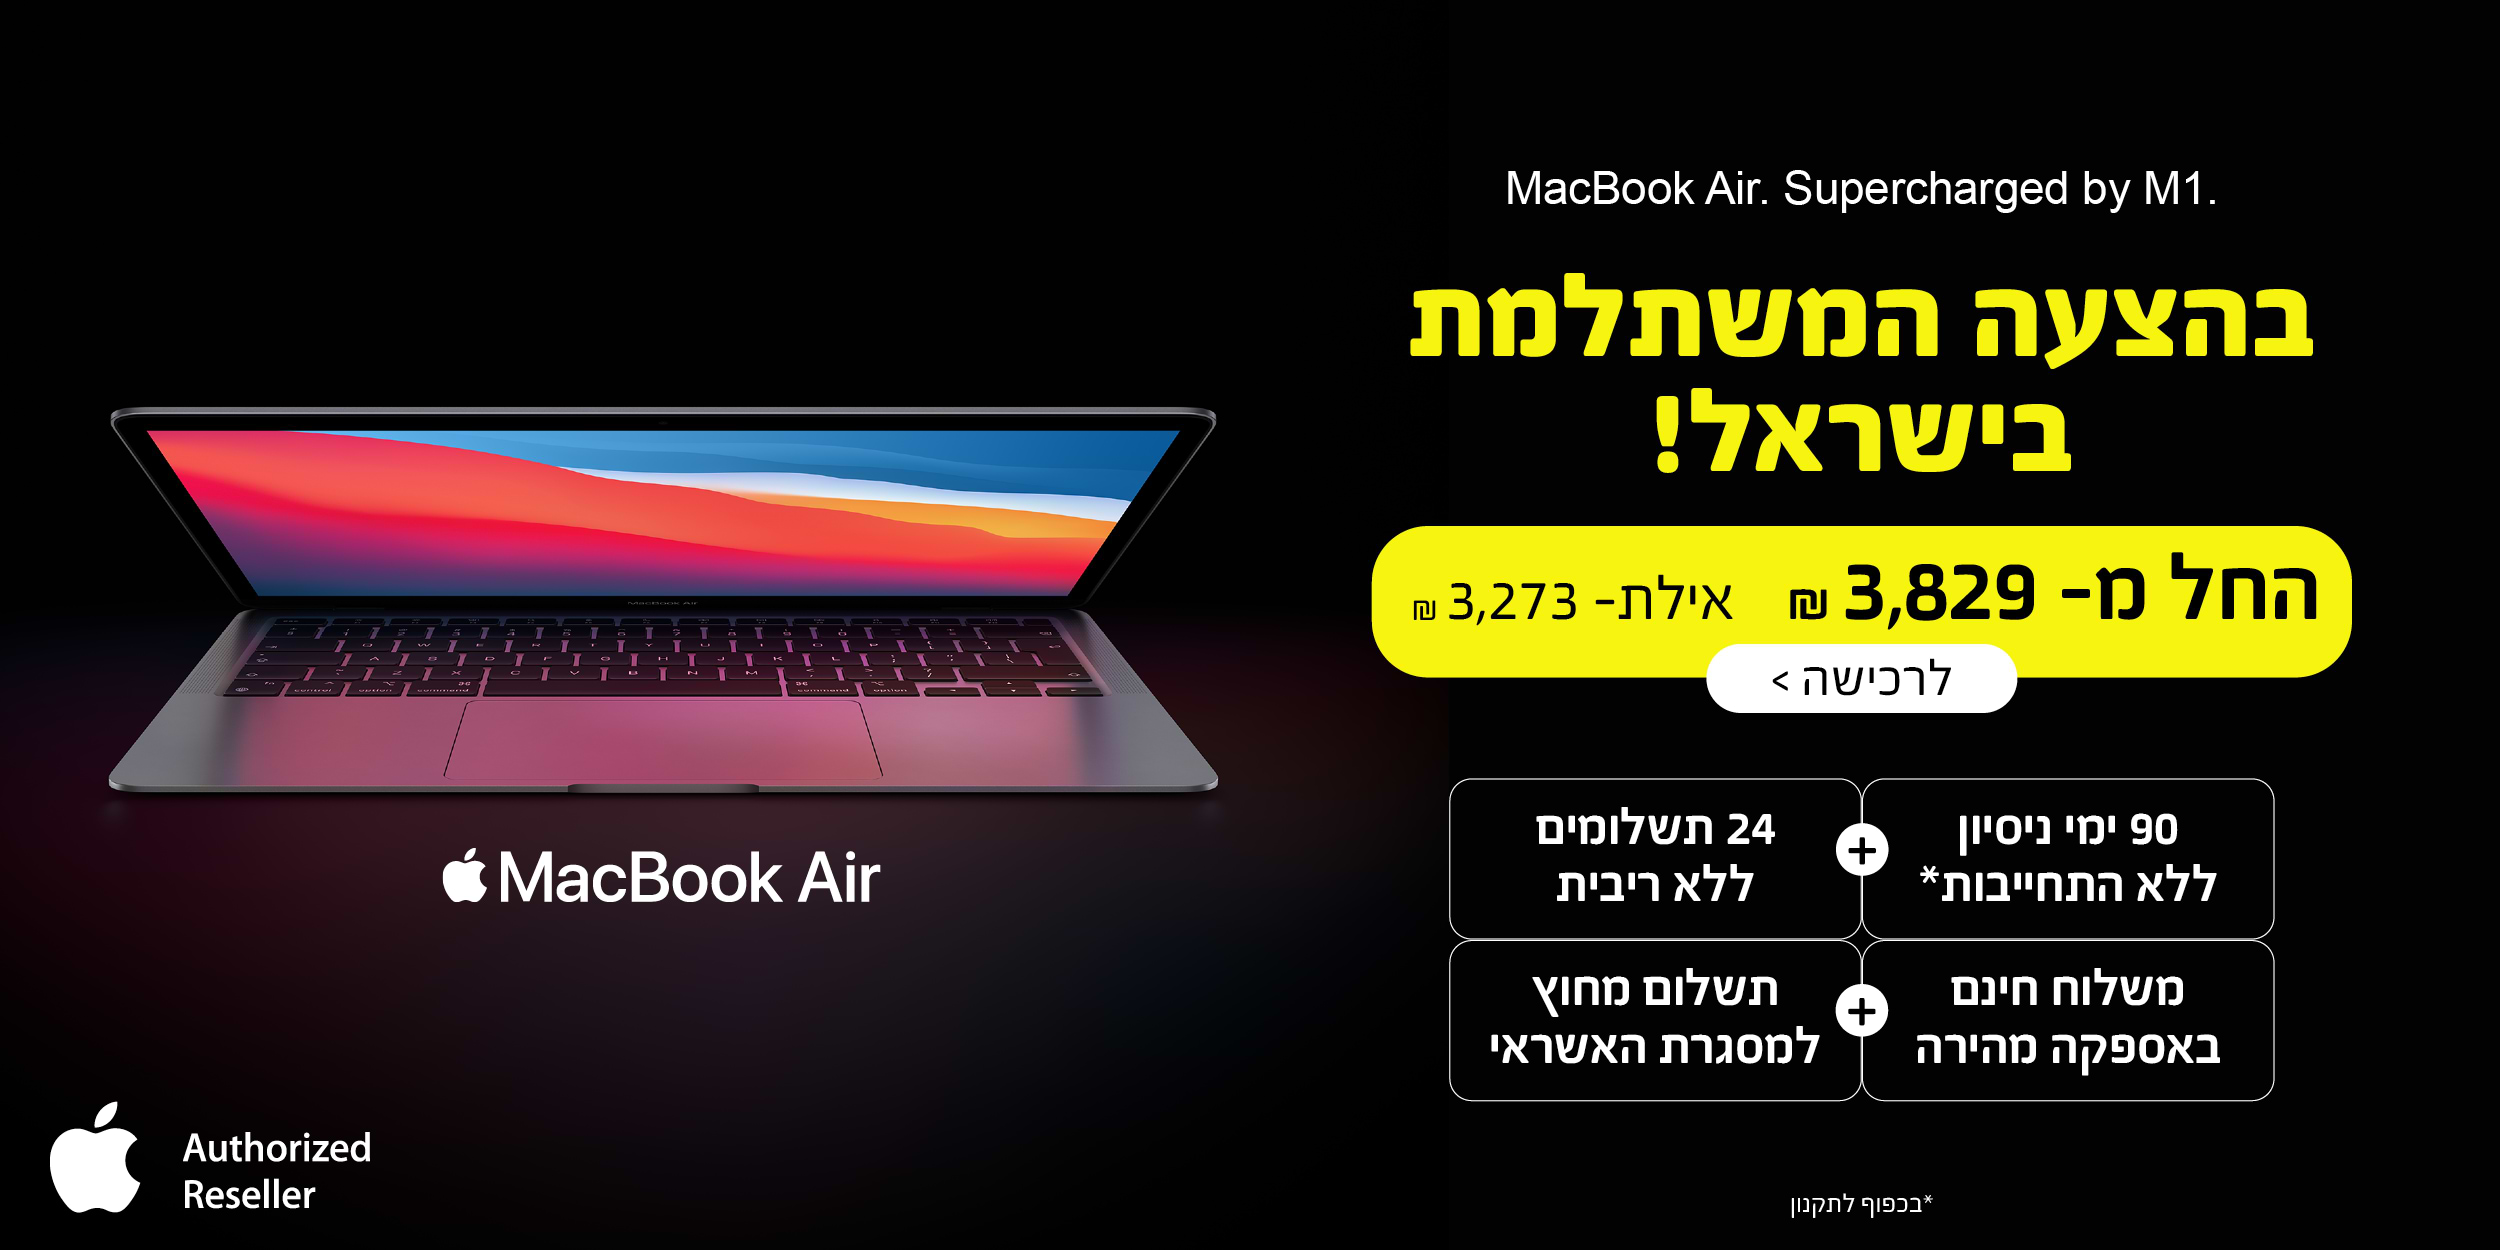 MacBook Air. Supercharged by M1. בהצעה המשתלמת בישראל! החל מ- 3,829 ש